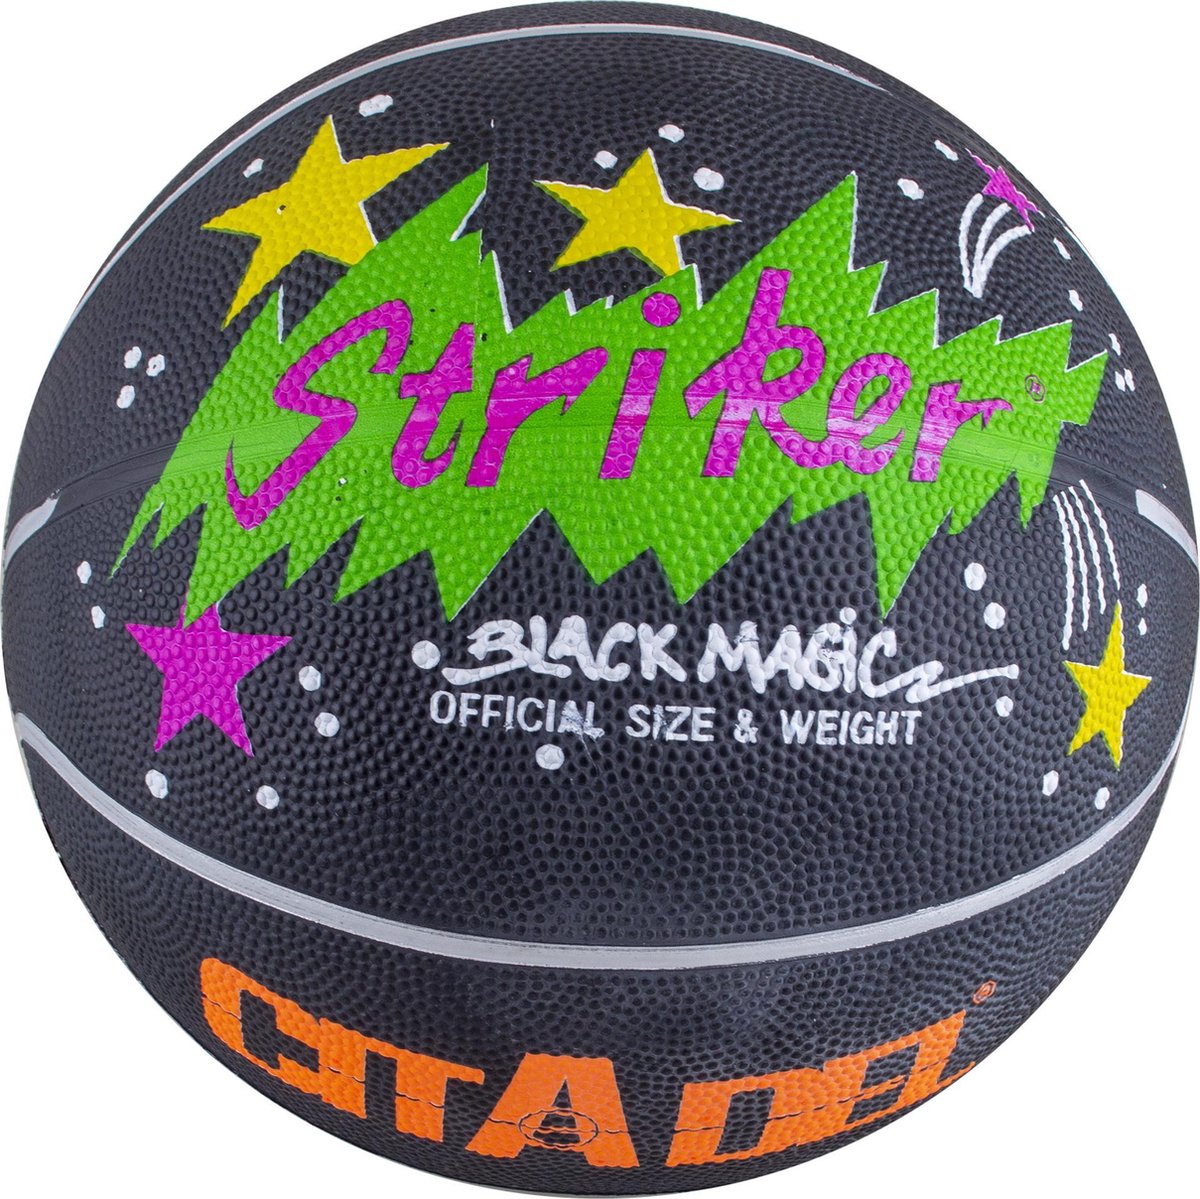 STRIKER basketbal Citadel Black magic - kleur zwart - official size and weight + GRATIS draagnetje en ventiel om op te blazen